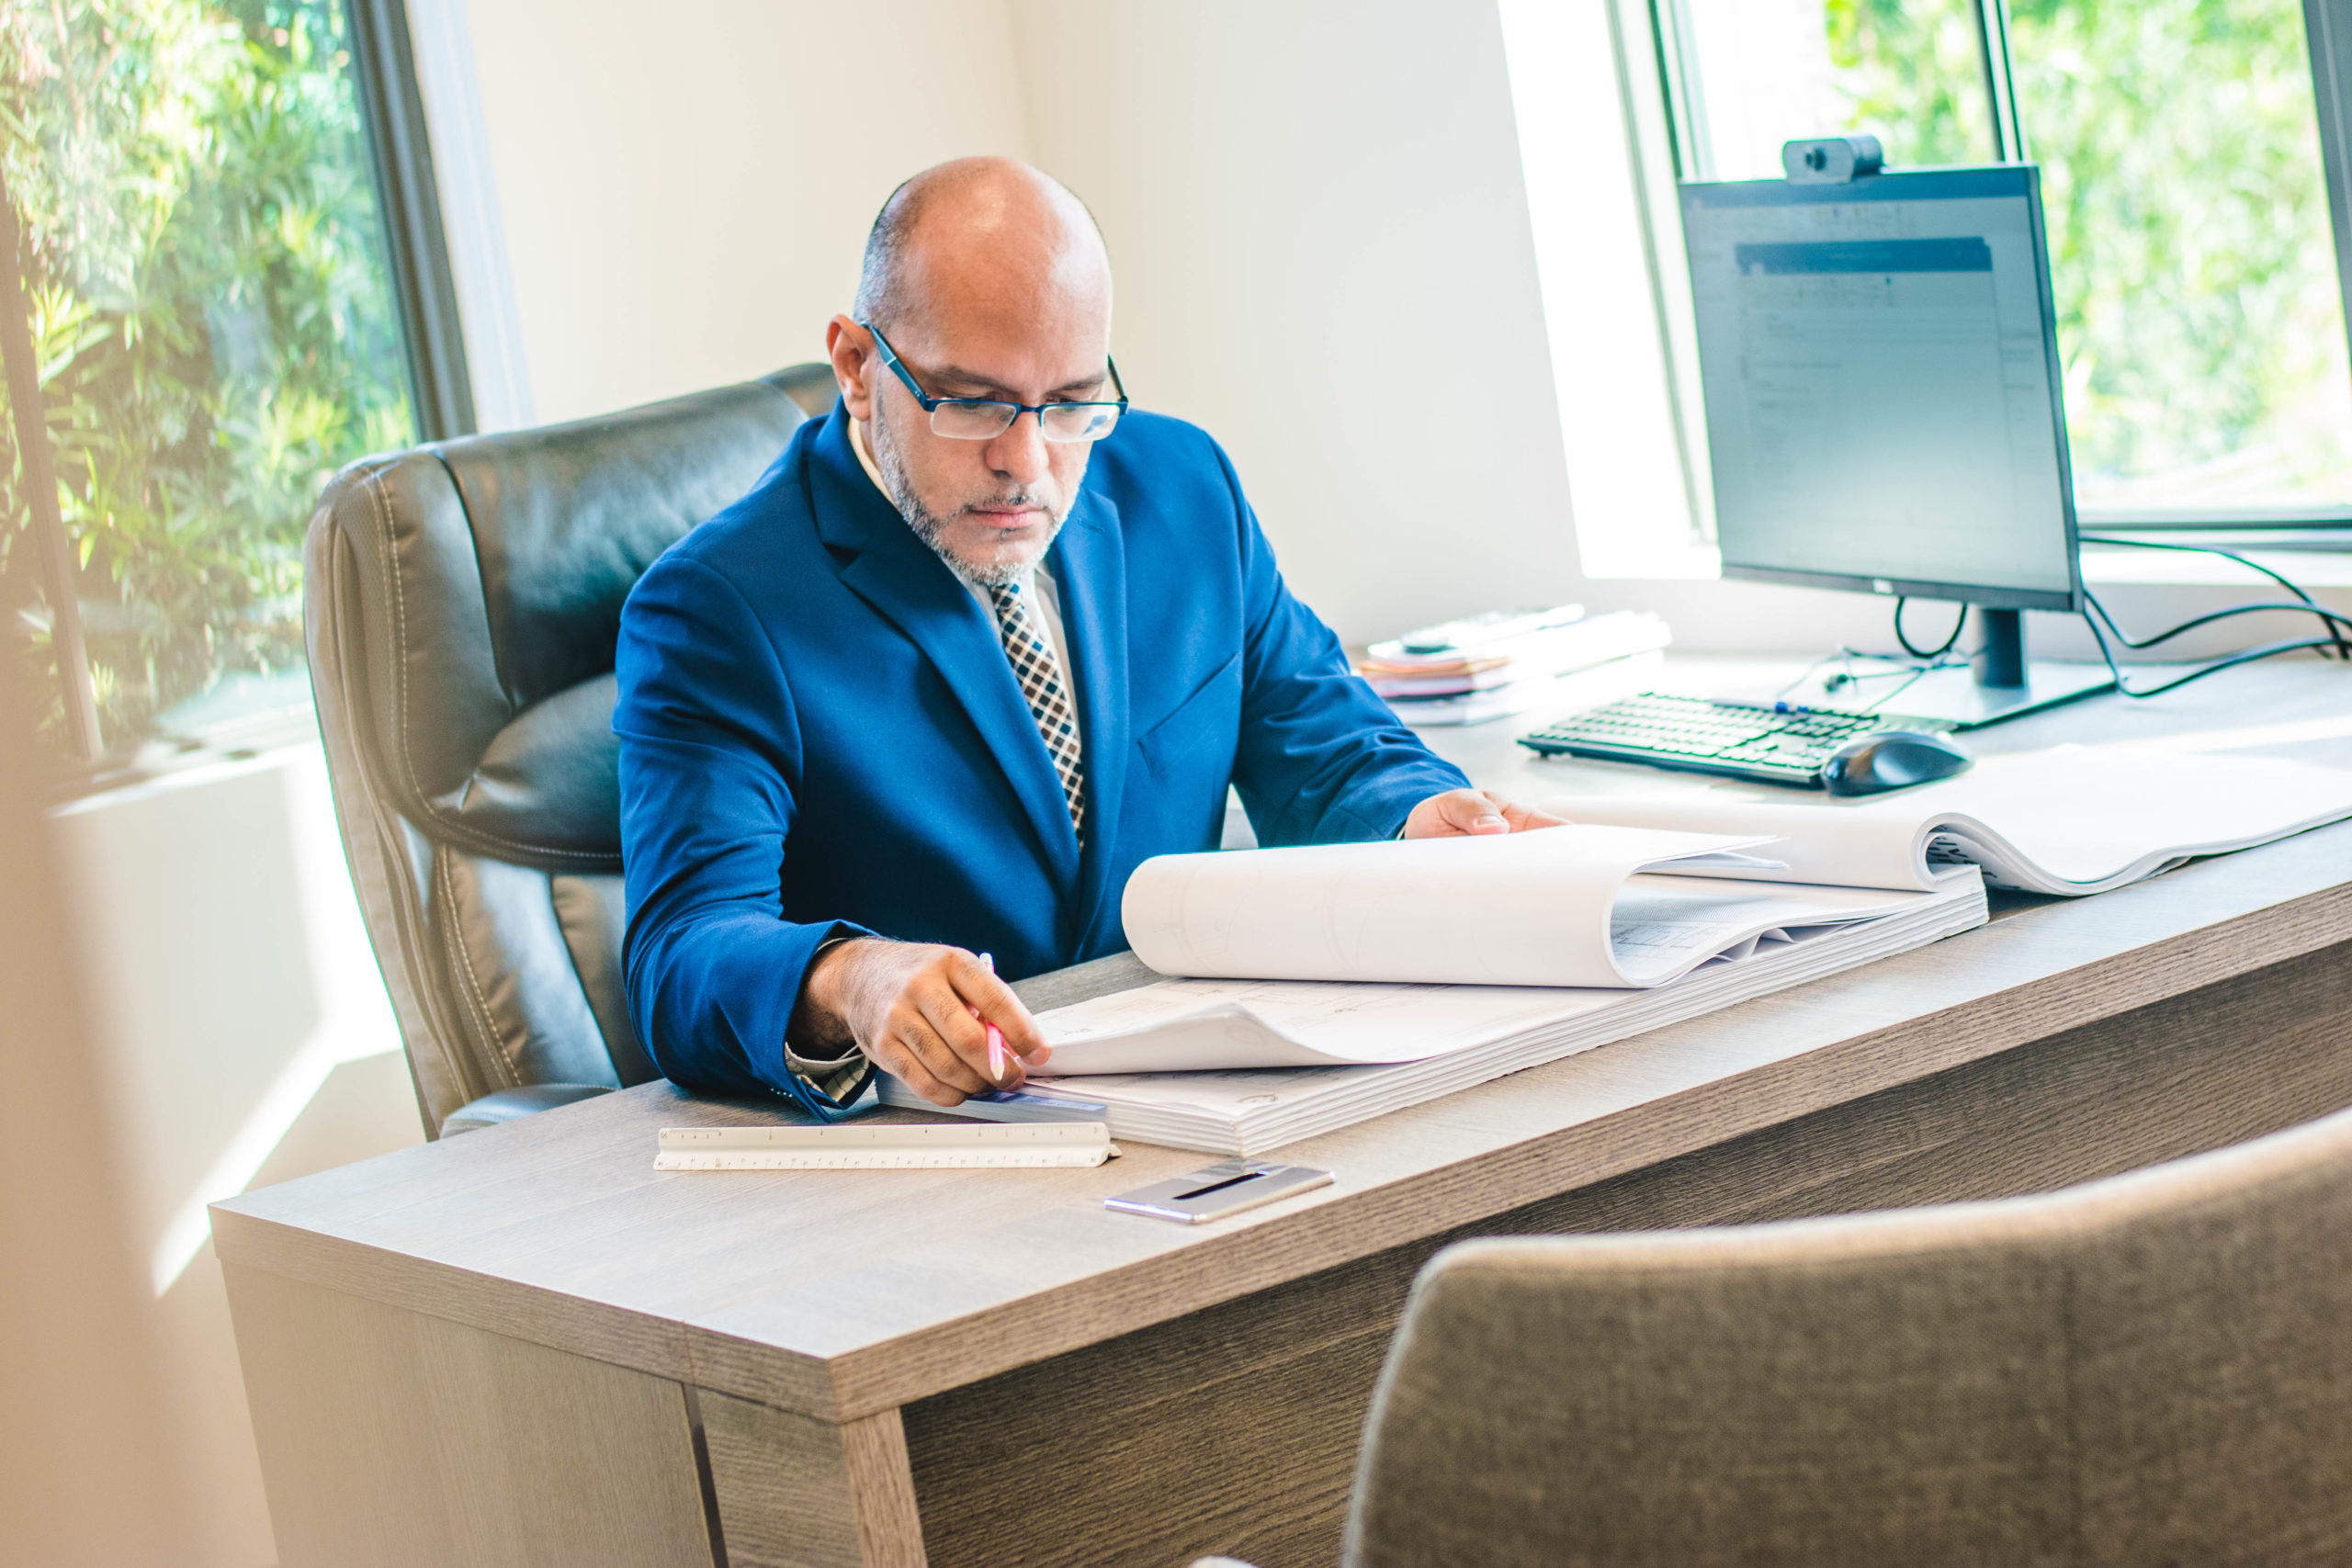 Manuel Velazquez sitting at his desk reviewing blueprints.